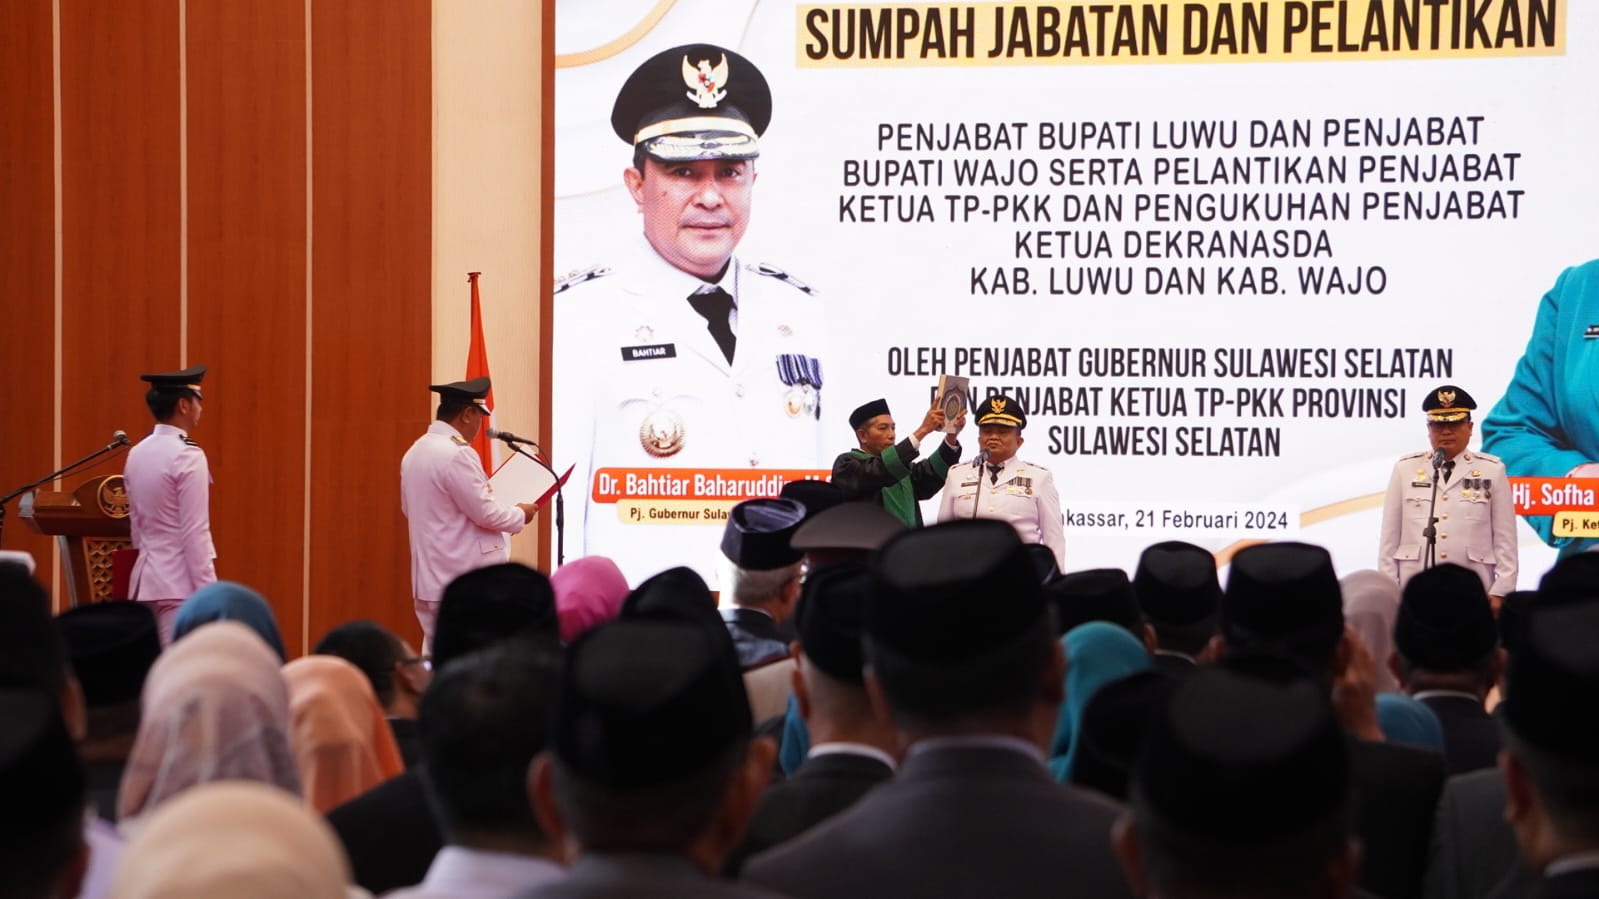 Kepala BNNP Sulawesi Selatan Menghadiri Undangan Pengambilan Sumpah Jabatan dan Pelantikan Penjabat Bupati Luwu dan Penjabat Bupati Wajo